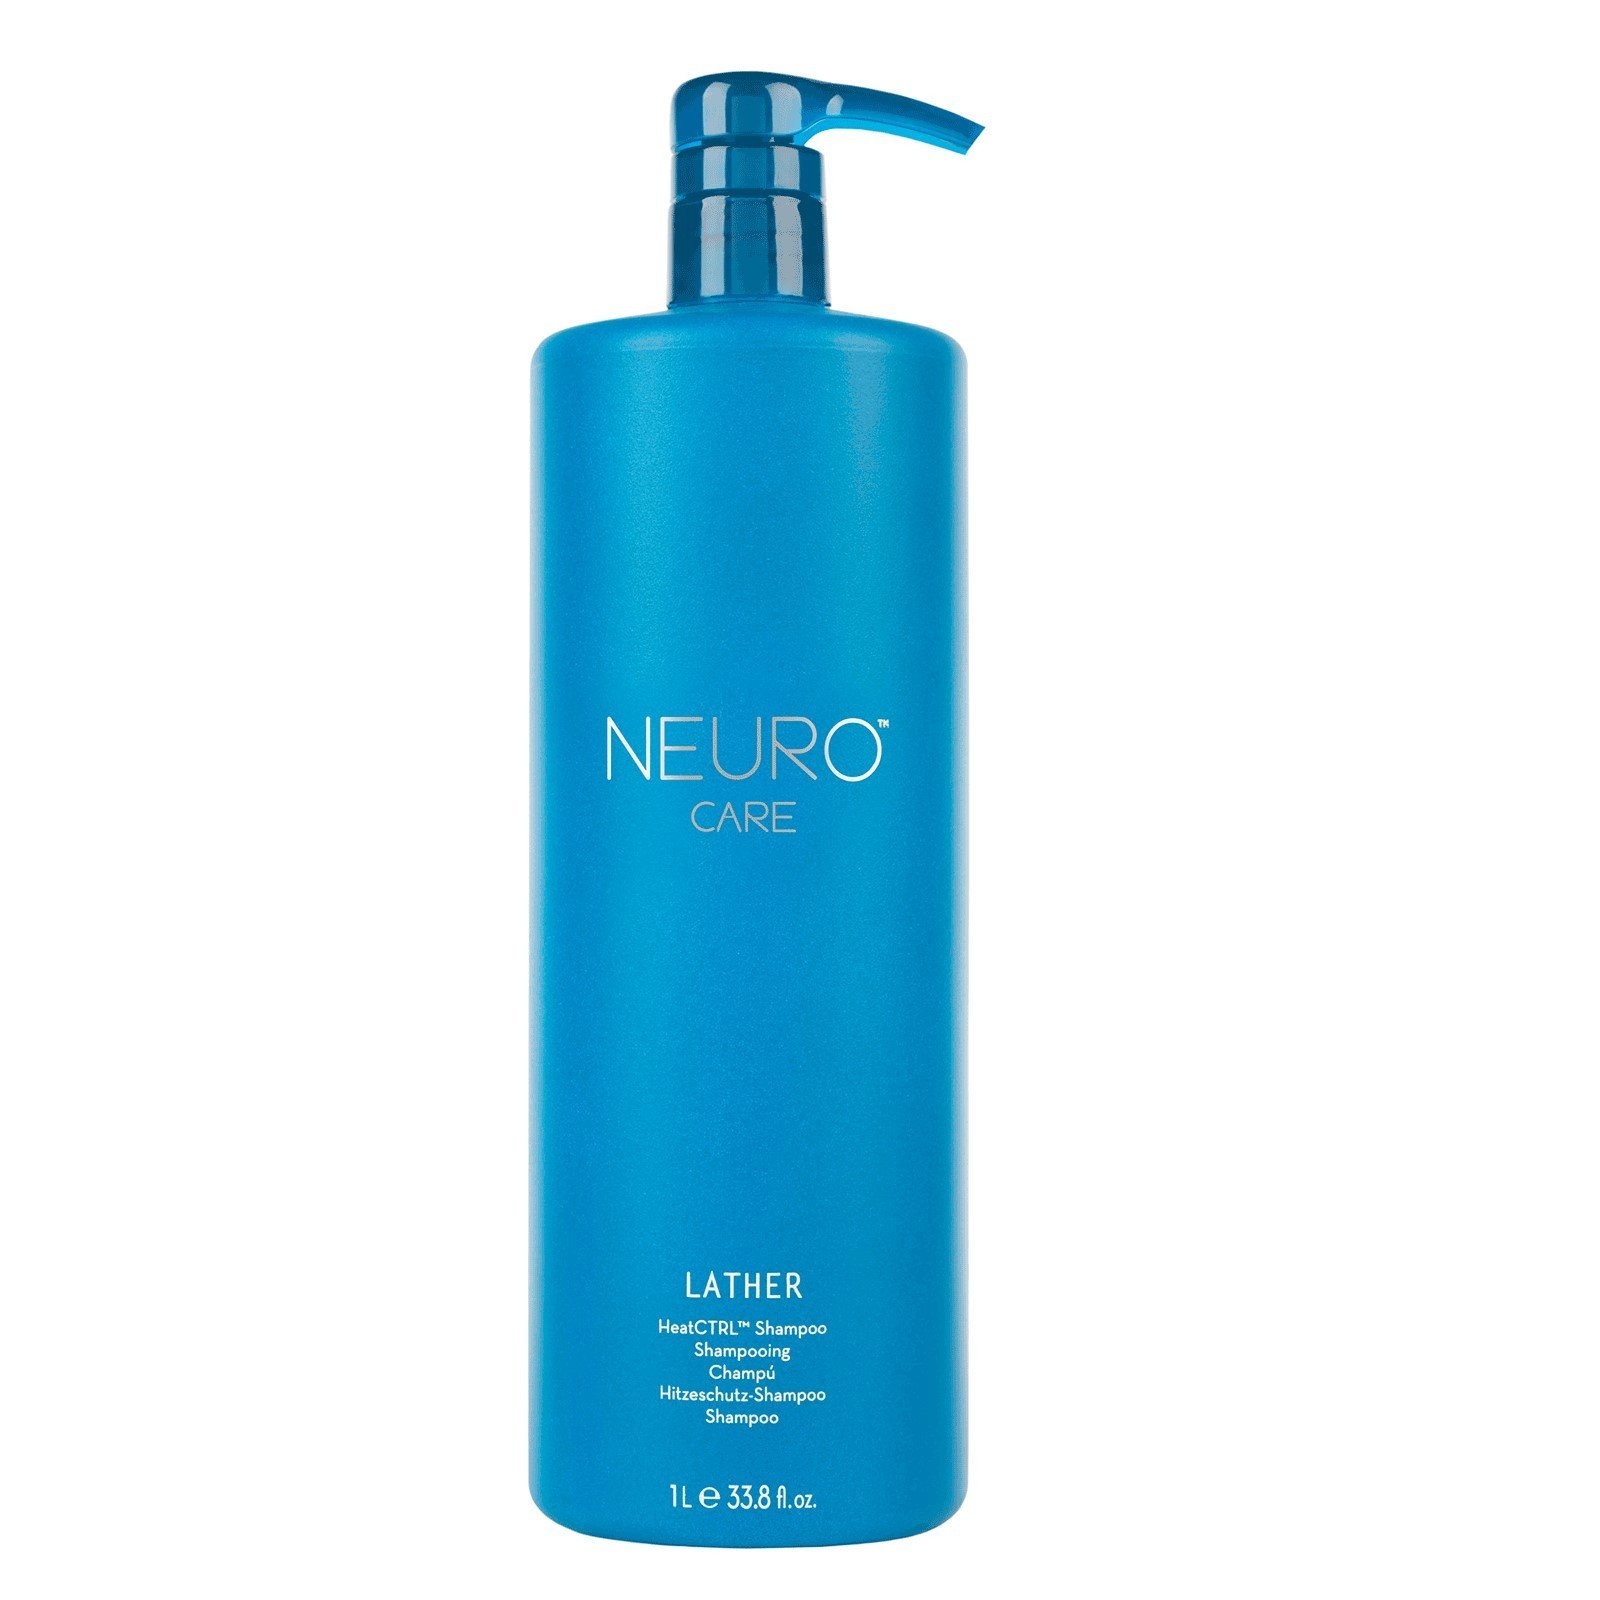 Paul Mitchell Neuro Lather HeatCTRL Shampoo - Hitzeschutz-Shampoo mit HeatCTRL Technologie, Thermo-Care Shampoo für Hitze-geschädigtes Haar, 1000 ml